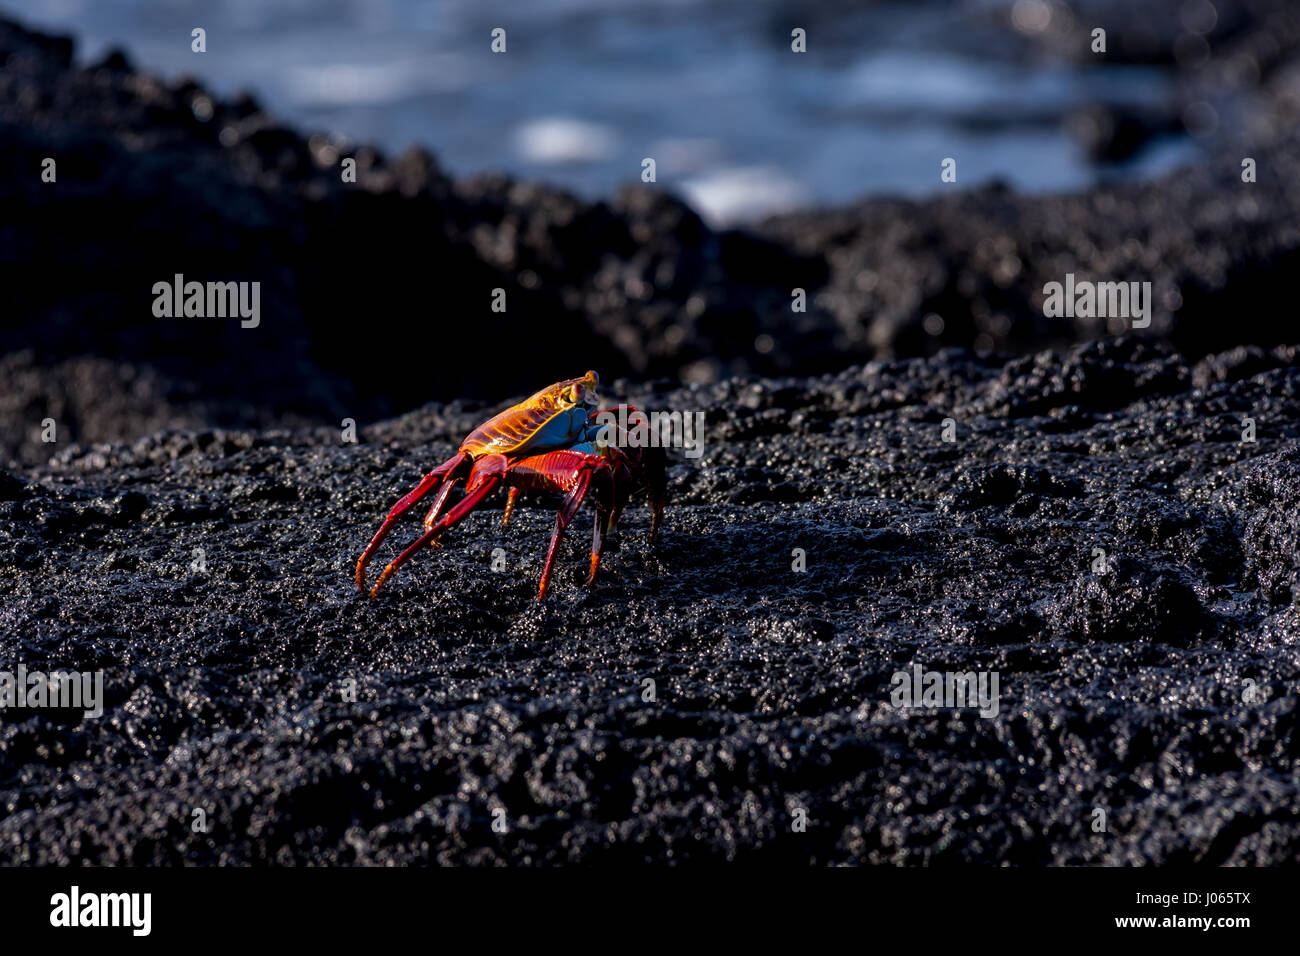 Un crabe Sally Lightfoot brillamment coloré (Grapsus grapsus) marche à travers la roche de lave le long de la côte aux îles Galapagos. Banque D'Images